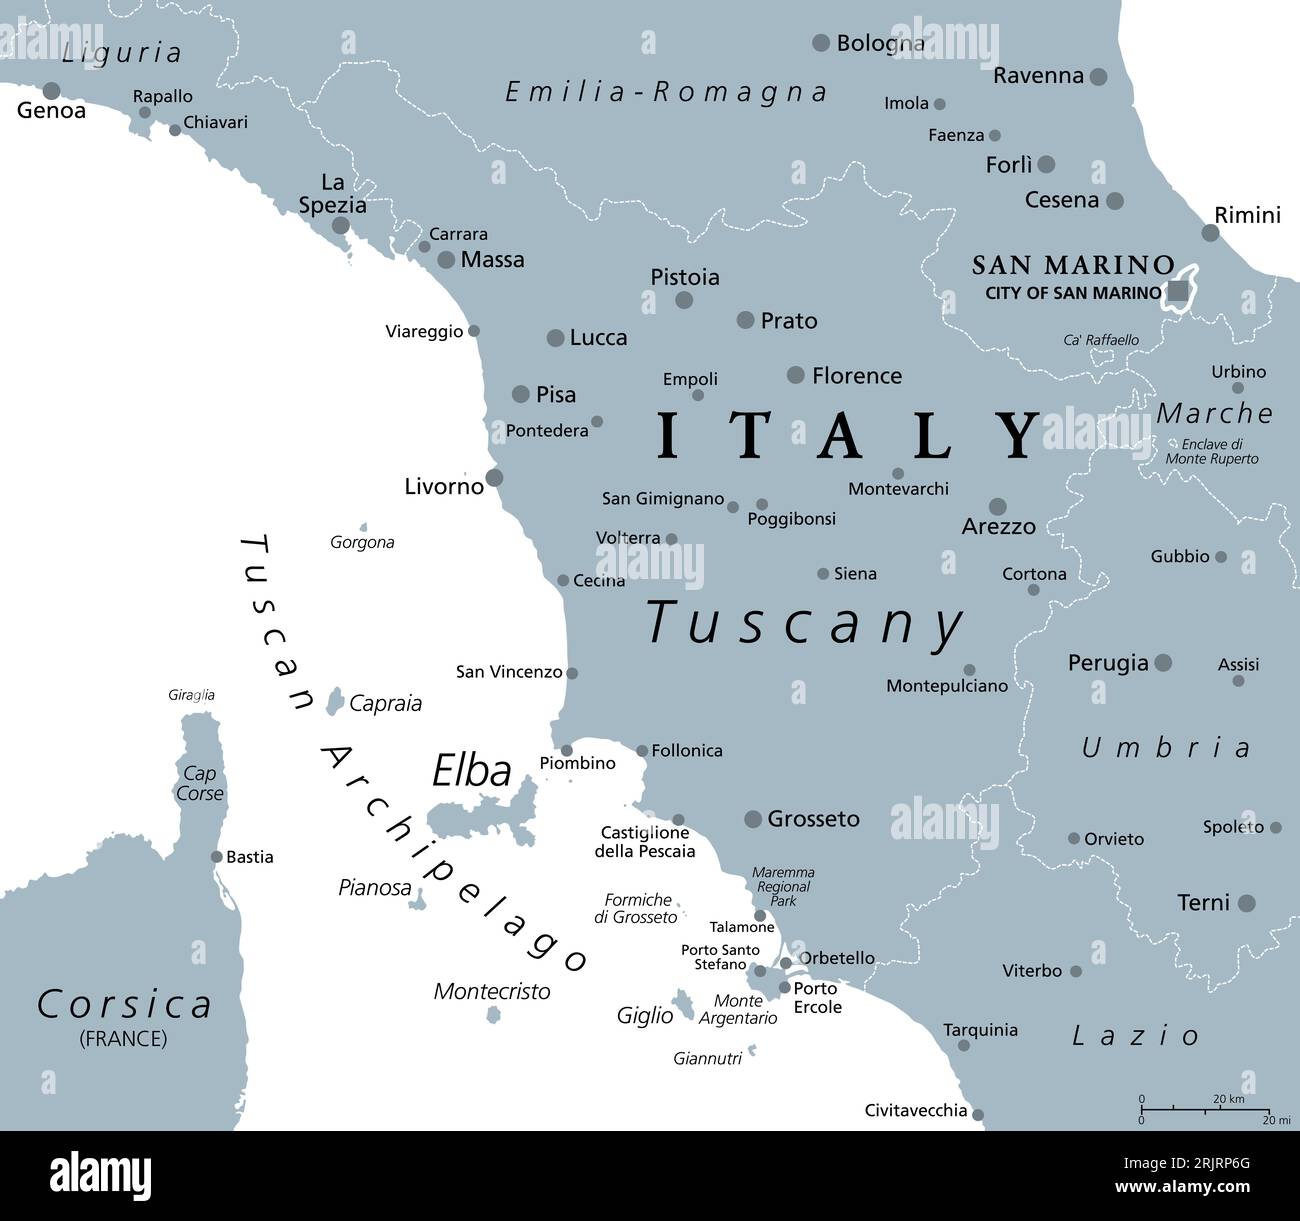 Toscana, región en el centro de Italia, mapa político gris con lugares turísticos populares como Florencia, Castiglione della Pescaia, Pisa, Lucca, Grosseto, etc. Foto de stock